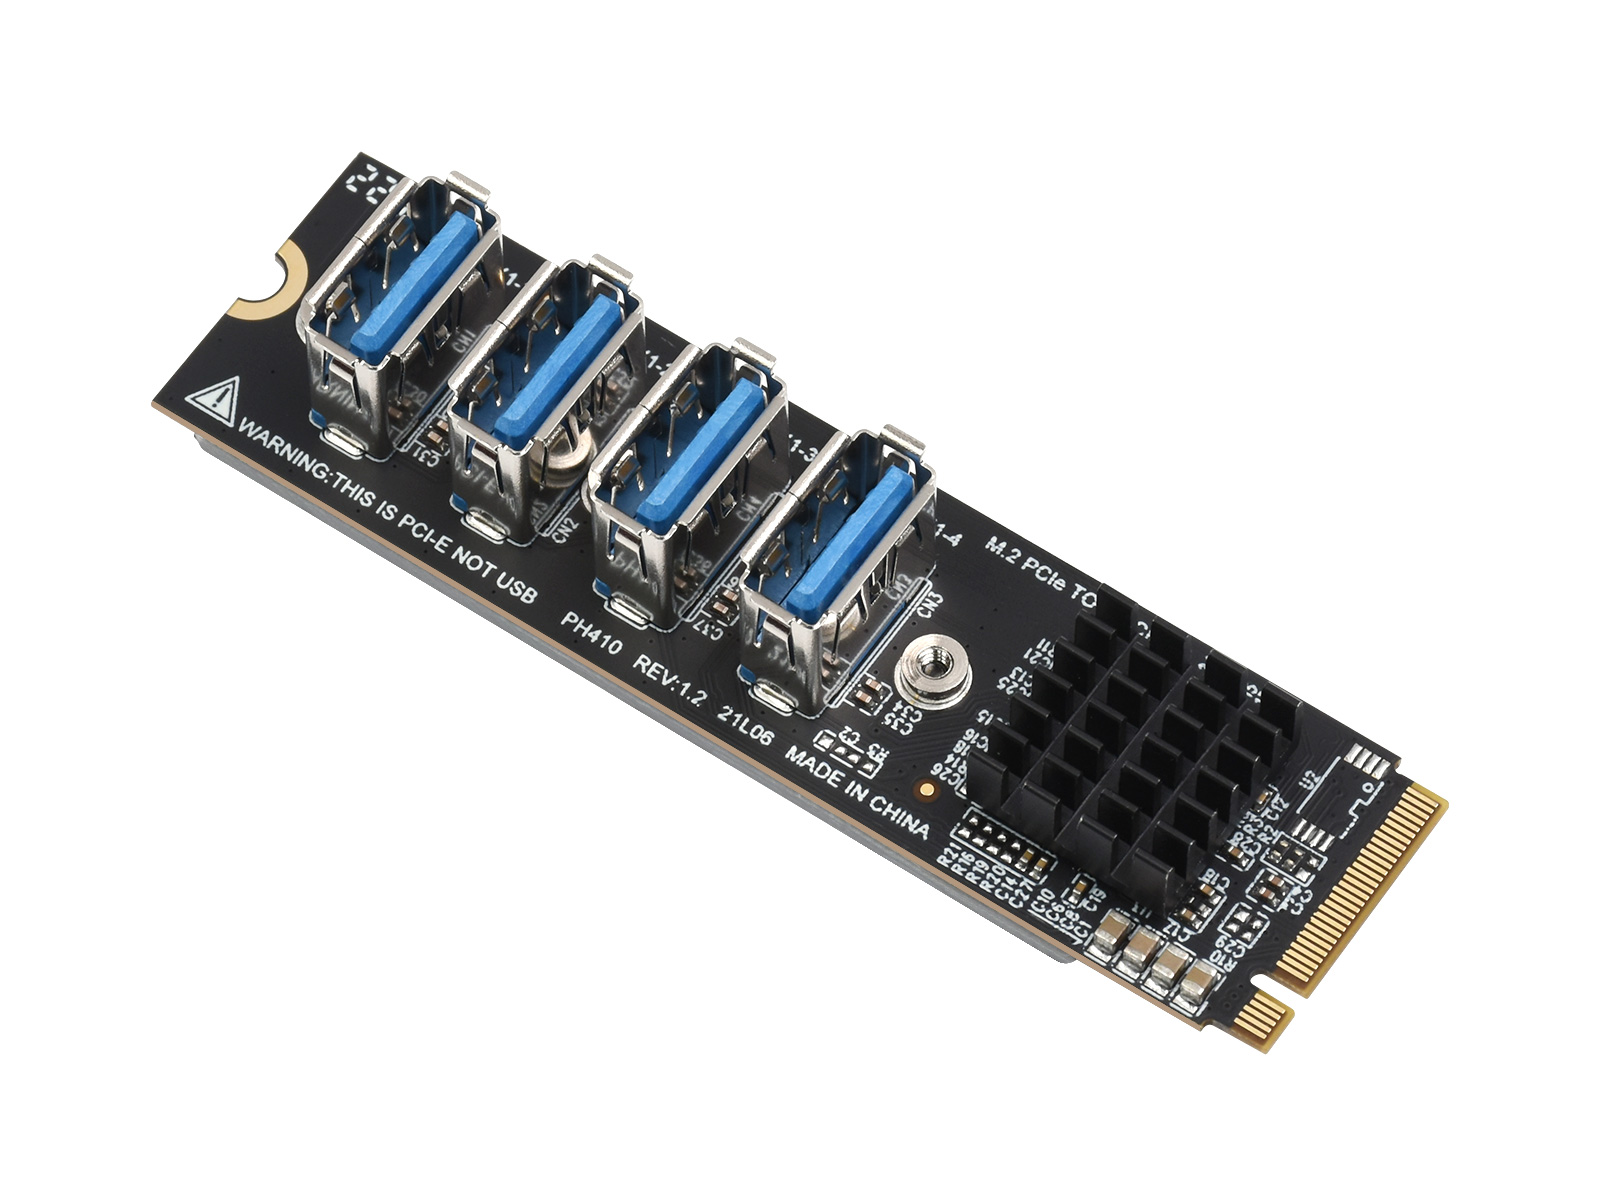 M.2 转 PCIe 4 口扩展卡 适合搭配 PCIe X1 转 X16 扩展卡使用